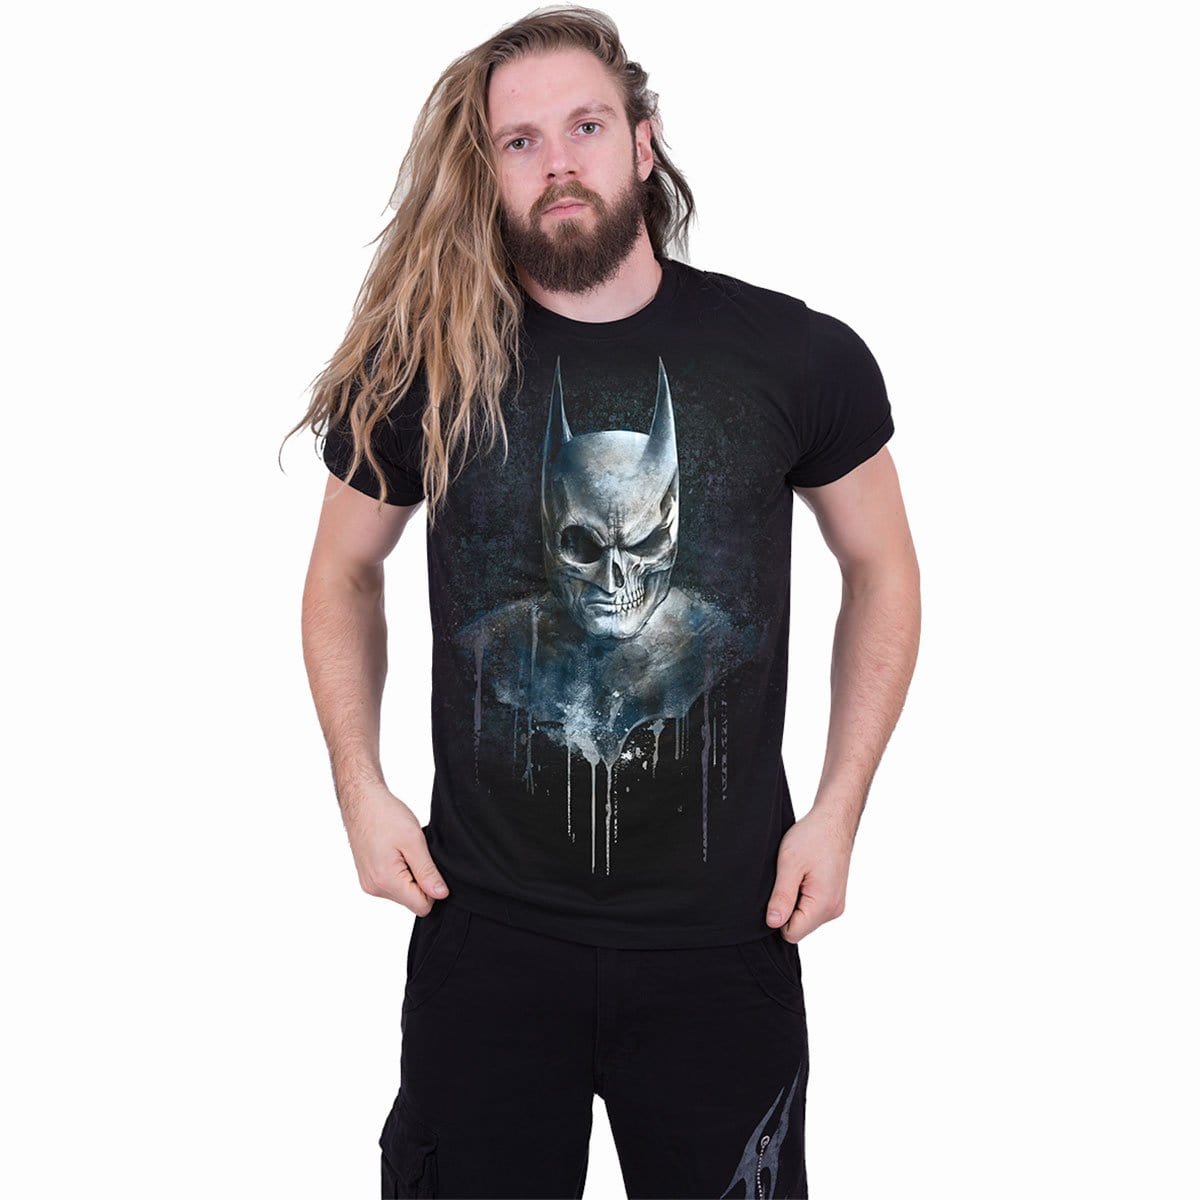 BATMAN - NOCTURNAL - T-Shirt Black - Spiral USA